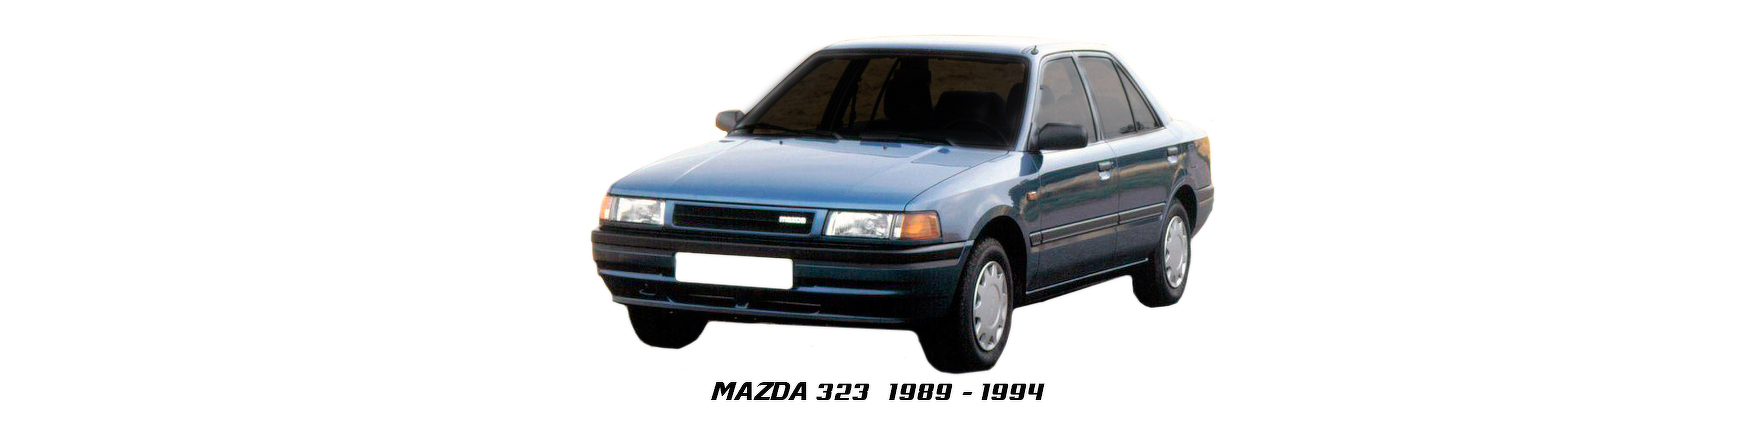 Piezas y Recambios de Mazda 323 de 1989 a 1994 | Visite Veramauto.es